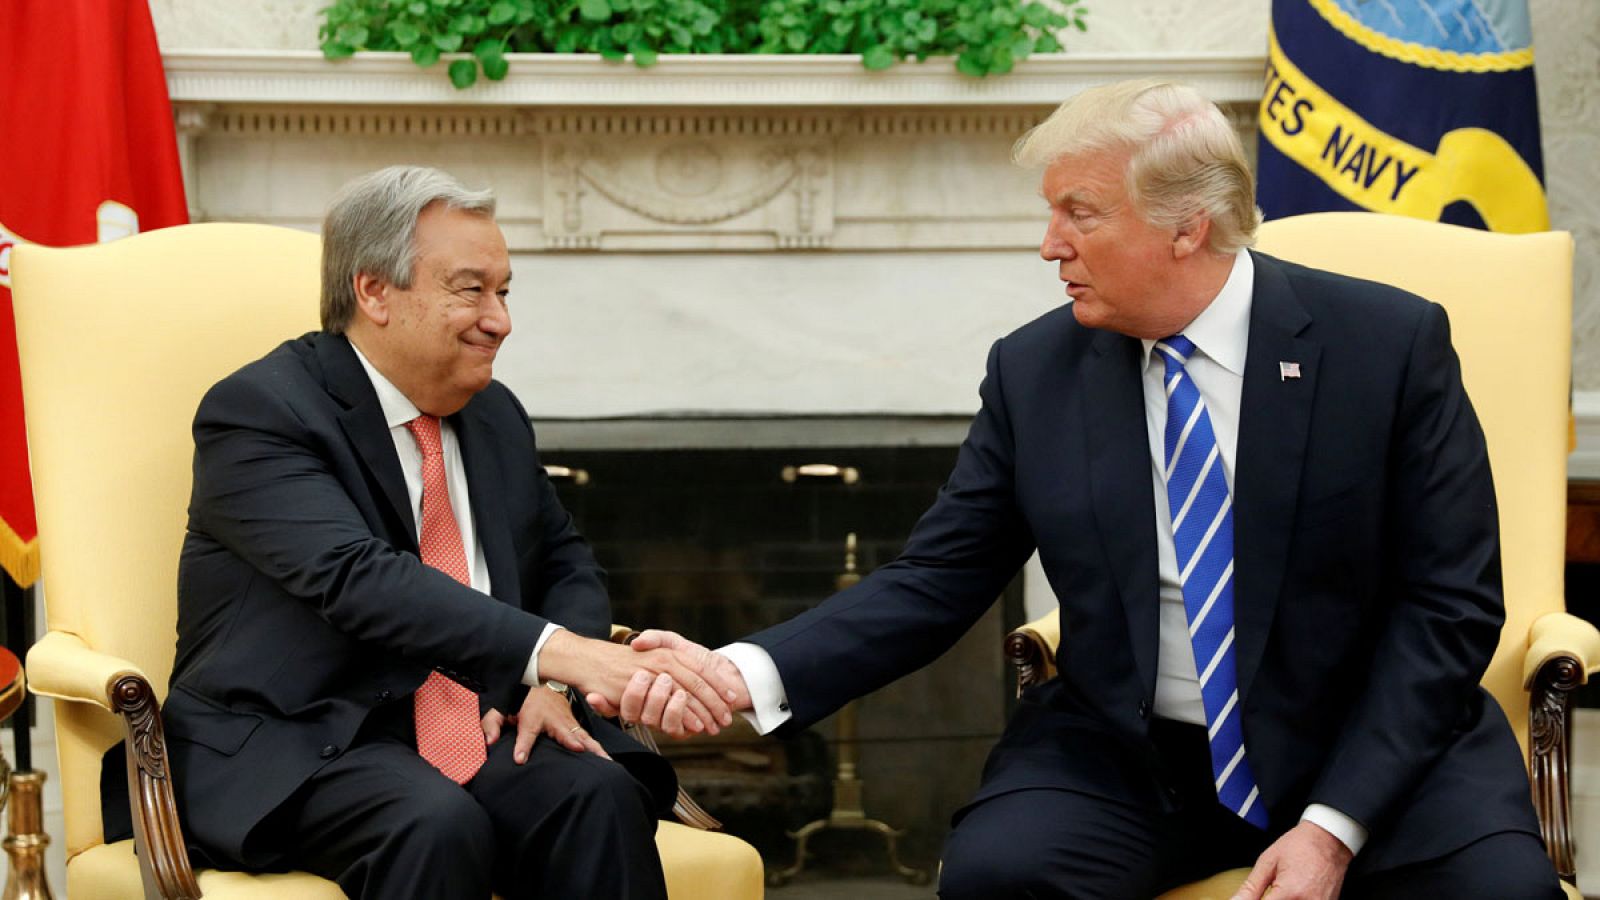 El presidente de EE.UU., Donald Trump, y el secretario general de la ONU, António Guterres, durante su reunión en la Casa Blanca el viernes 20 de octubre de 2017.